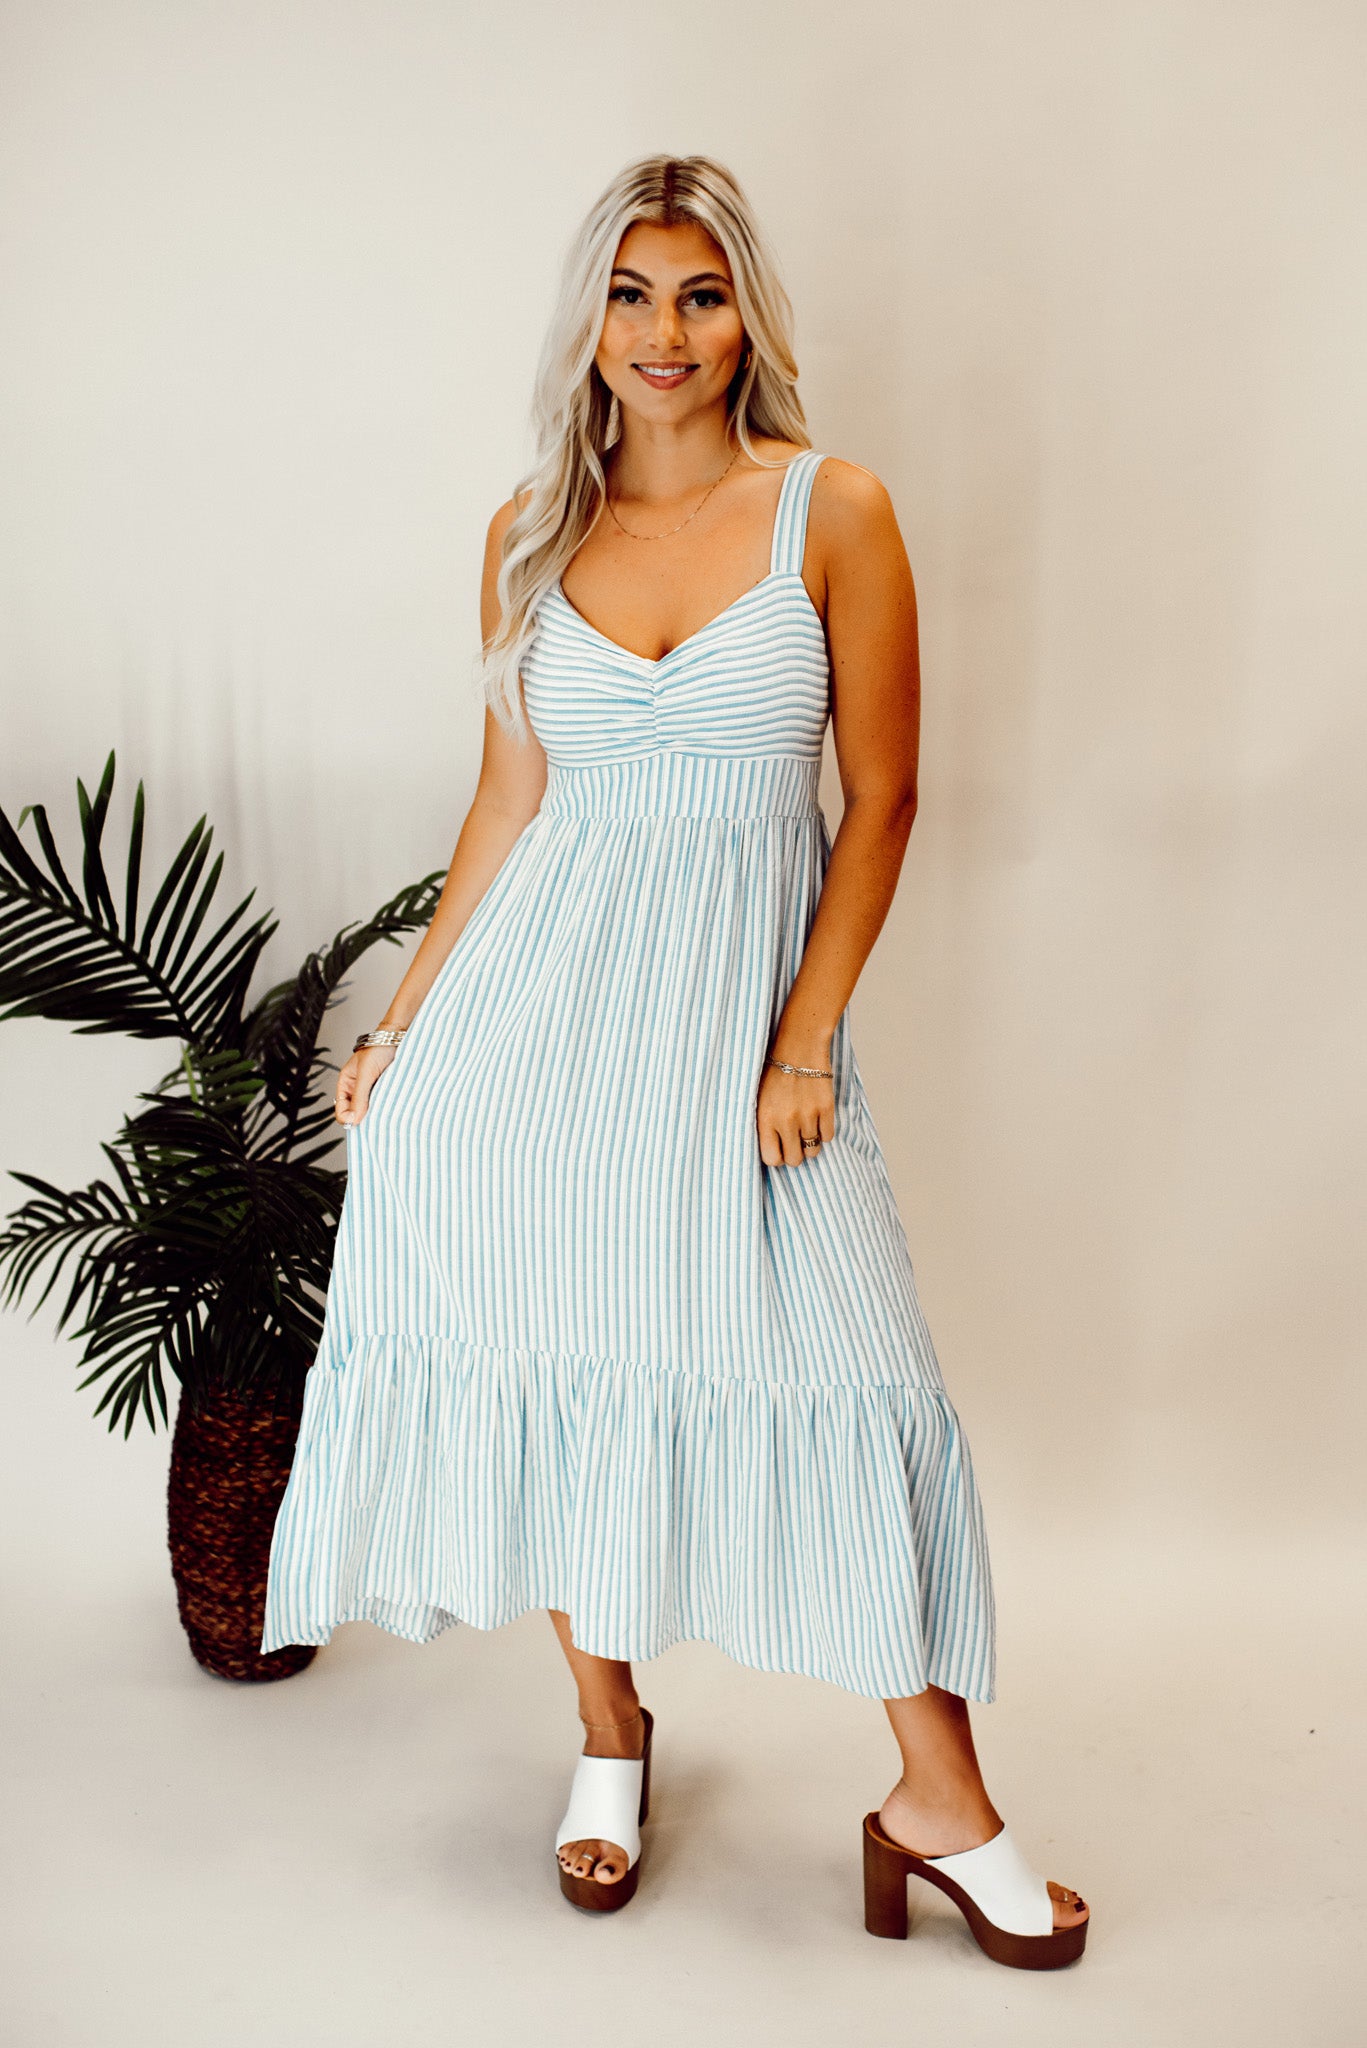 Buy Women Blue Textured Calf-Length Casual Dress Online - 815932